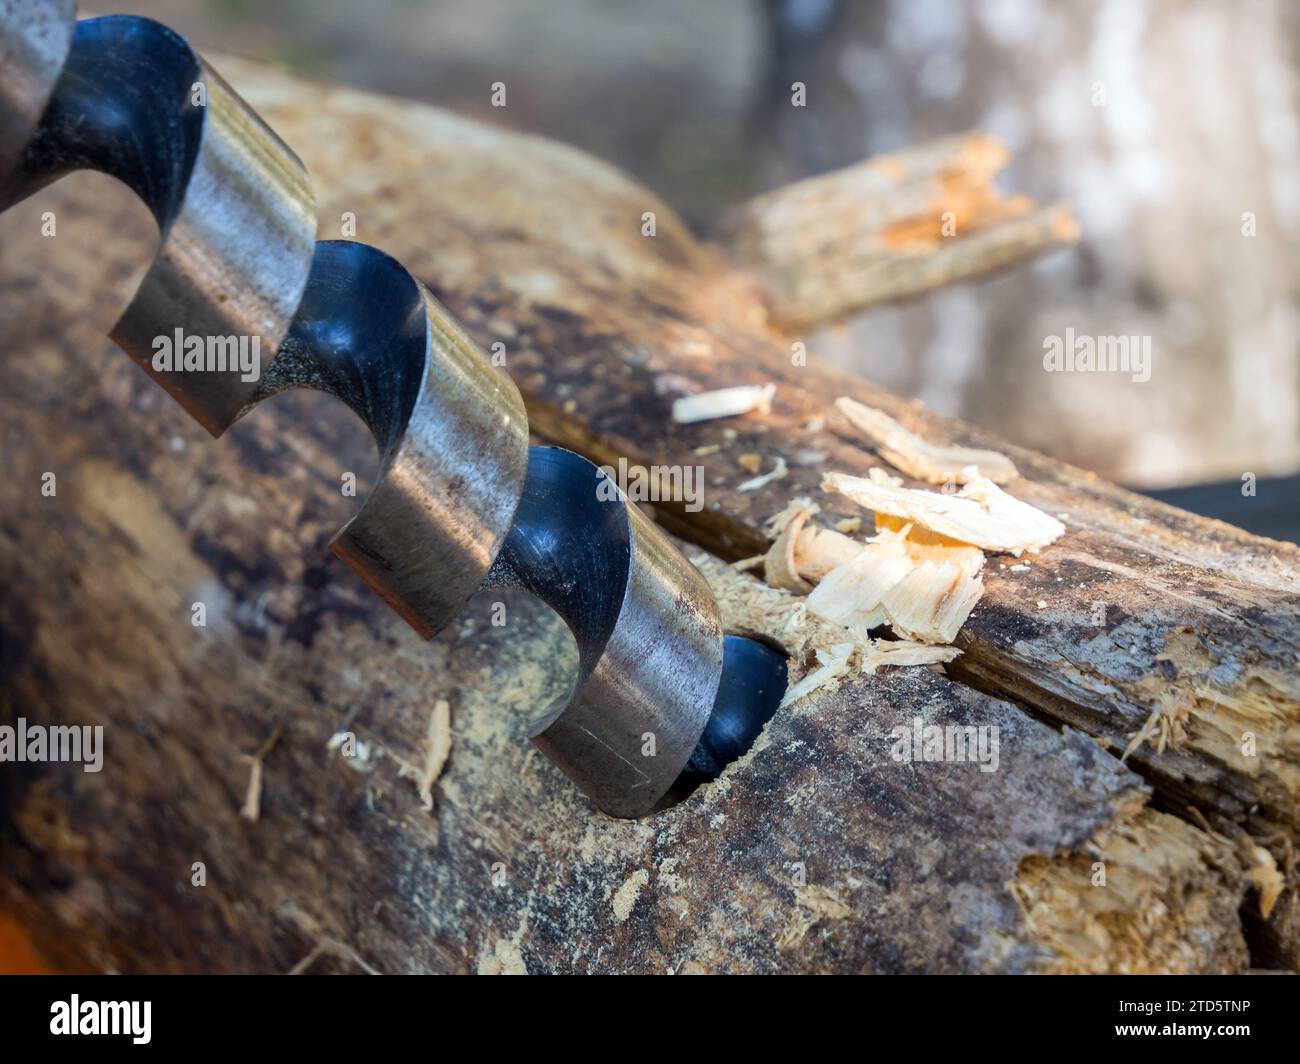 Taladro manual antiguo en el polvoriento taller, mesa de madera Fotografía  de stock - Alamy